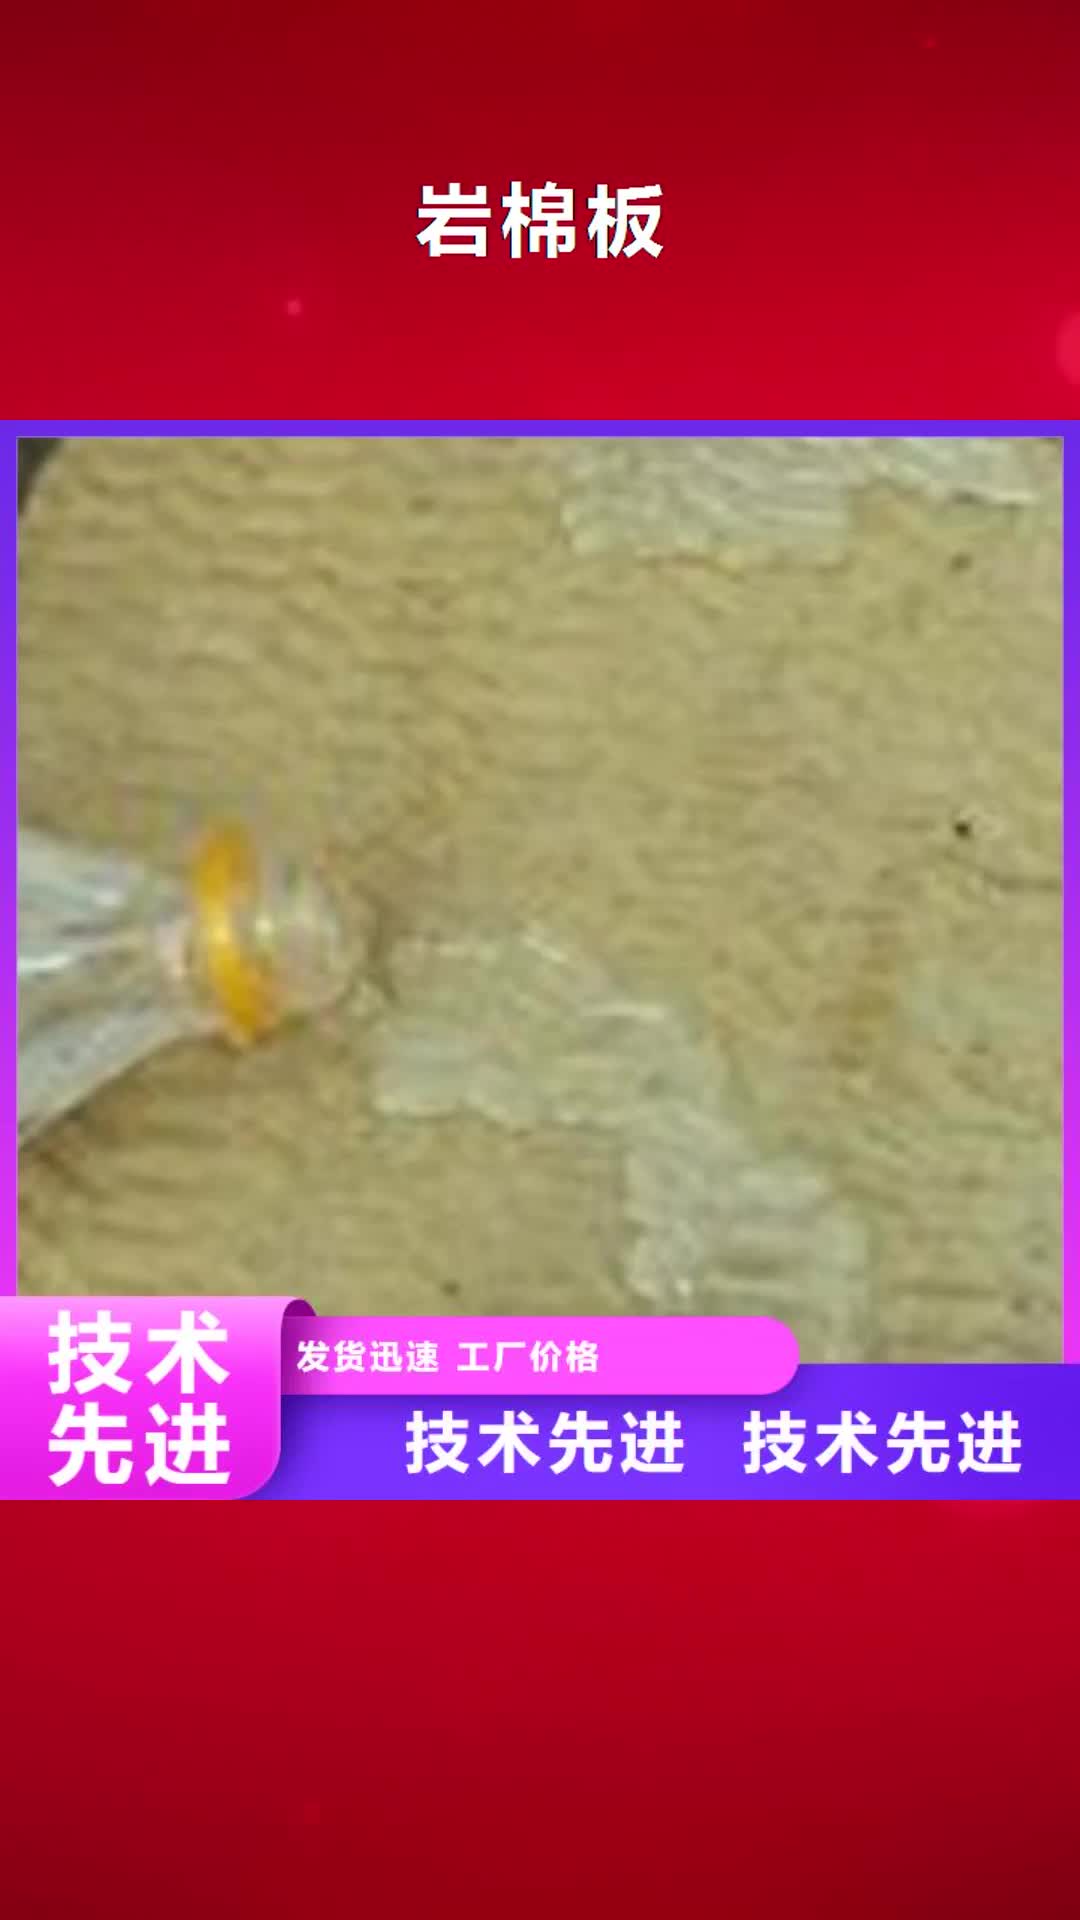 贵港【岩棉板】-玻璃棉复合板应用领域